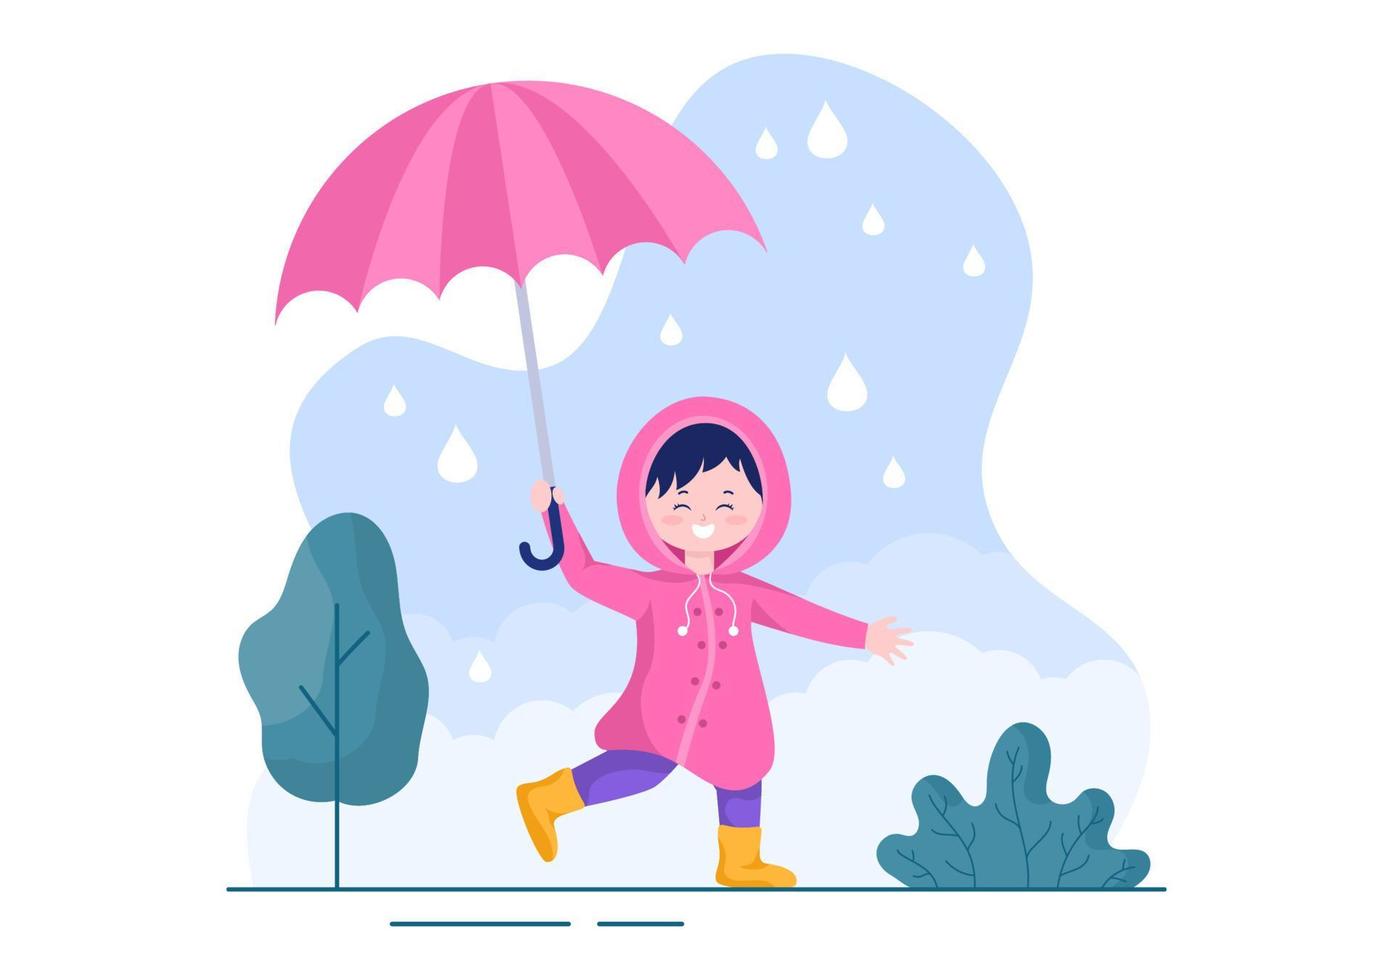 ragazzo carino che indossa un impermeabile, stivali di gomma e porta un ombrello nel mezzo delle docce a pioggia. illustrazione vettoriale del fumetto di sfondo piatto per banner o poster